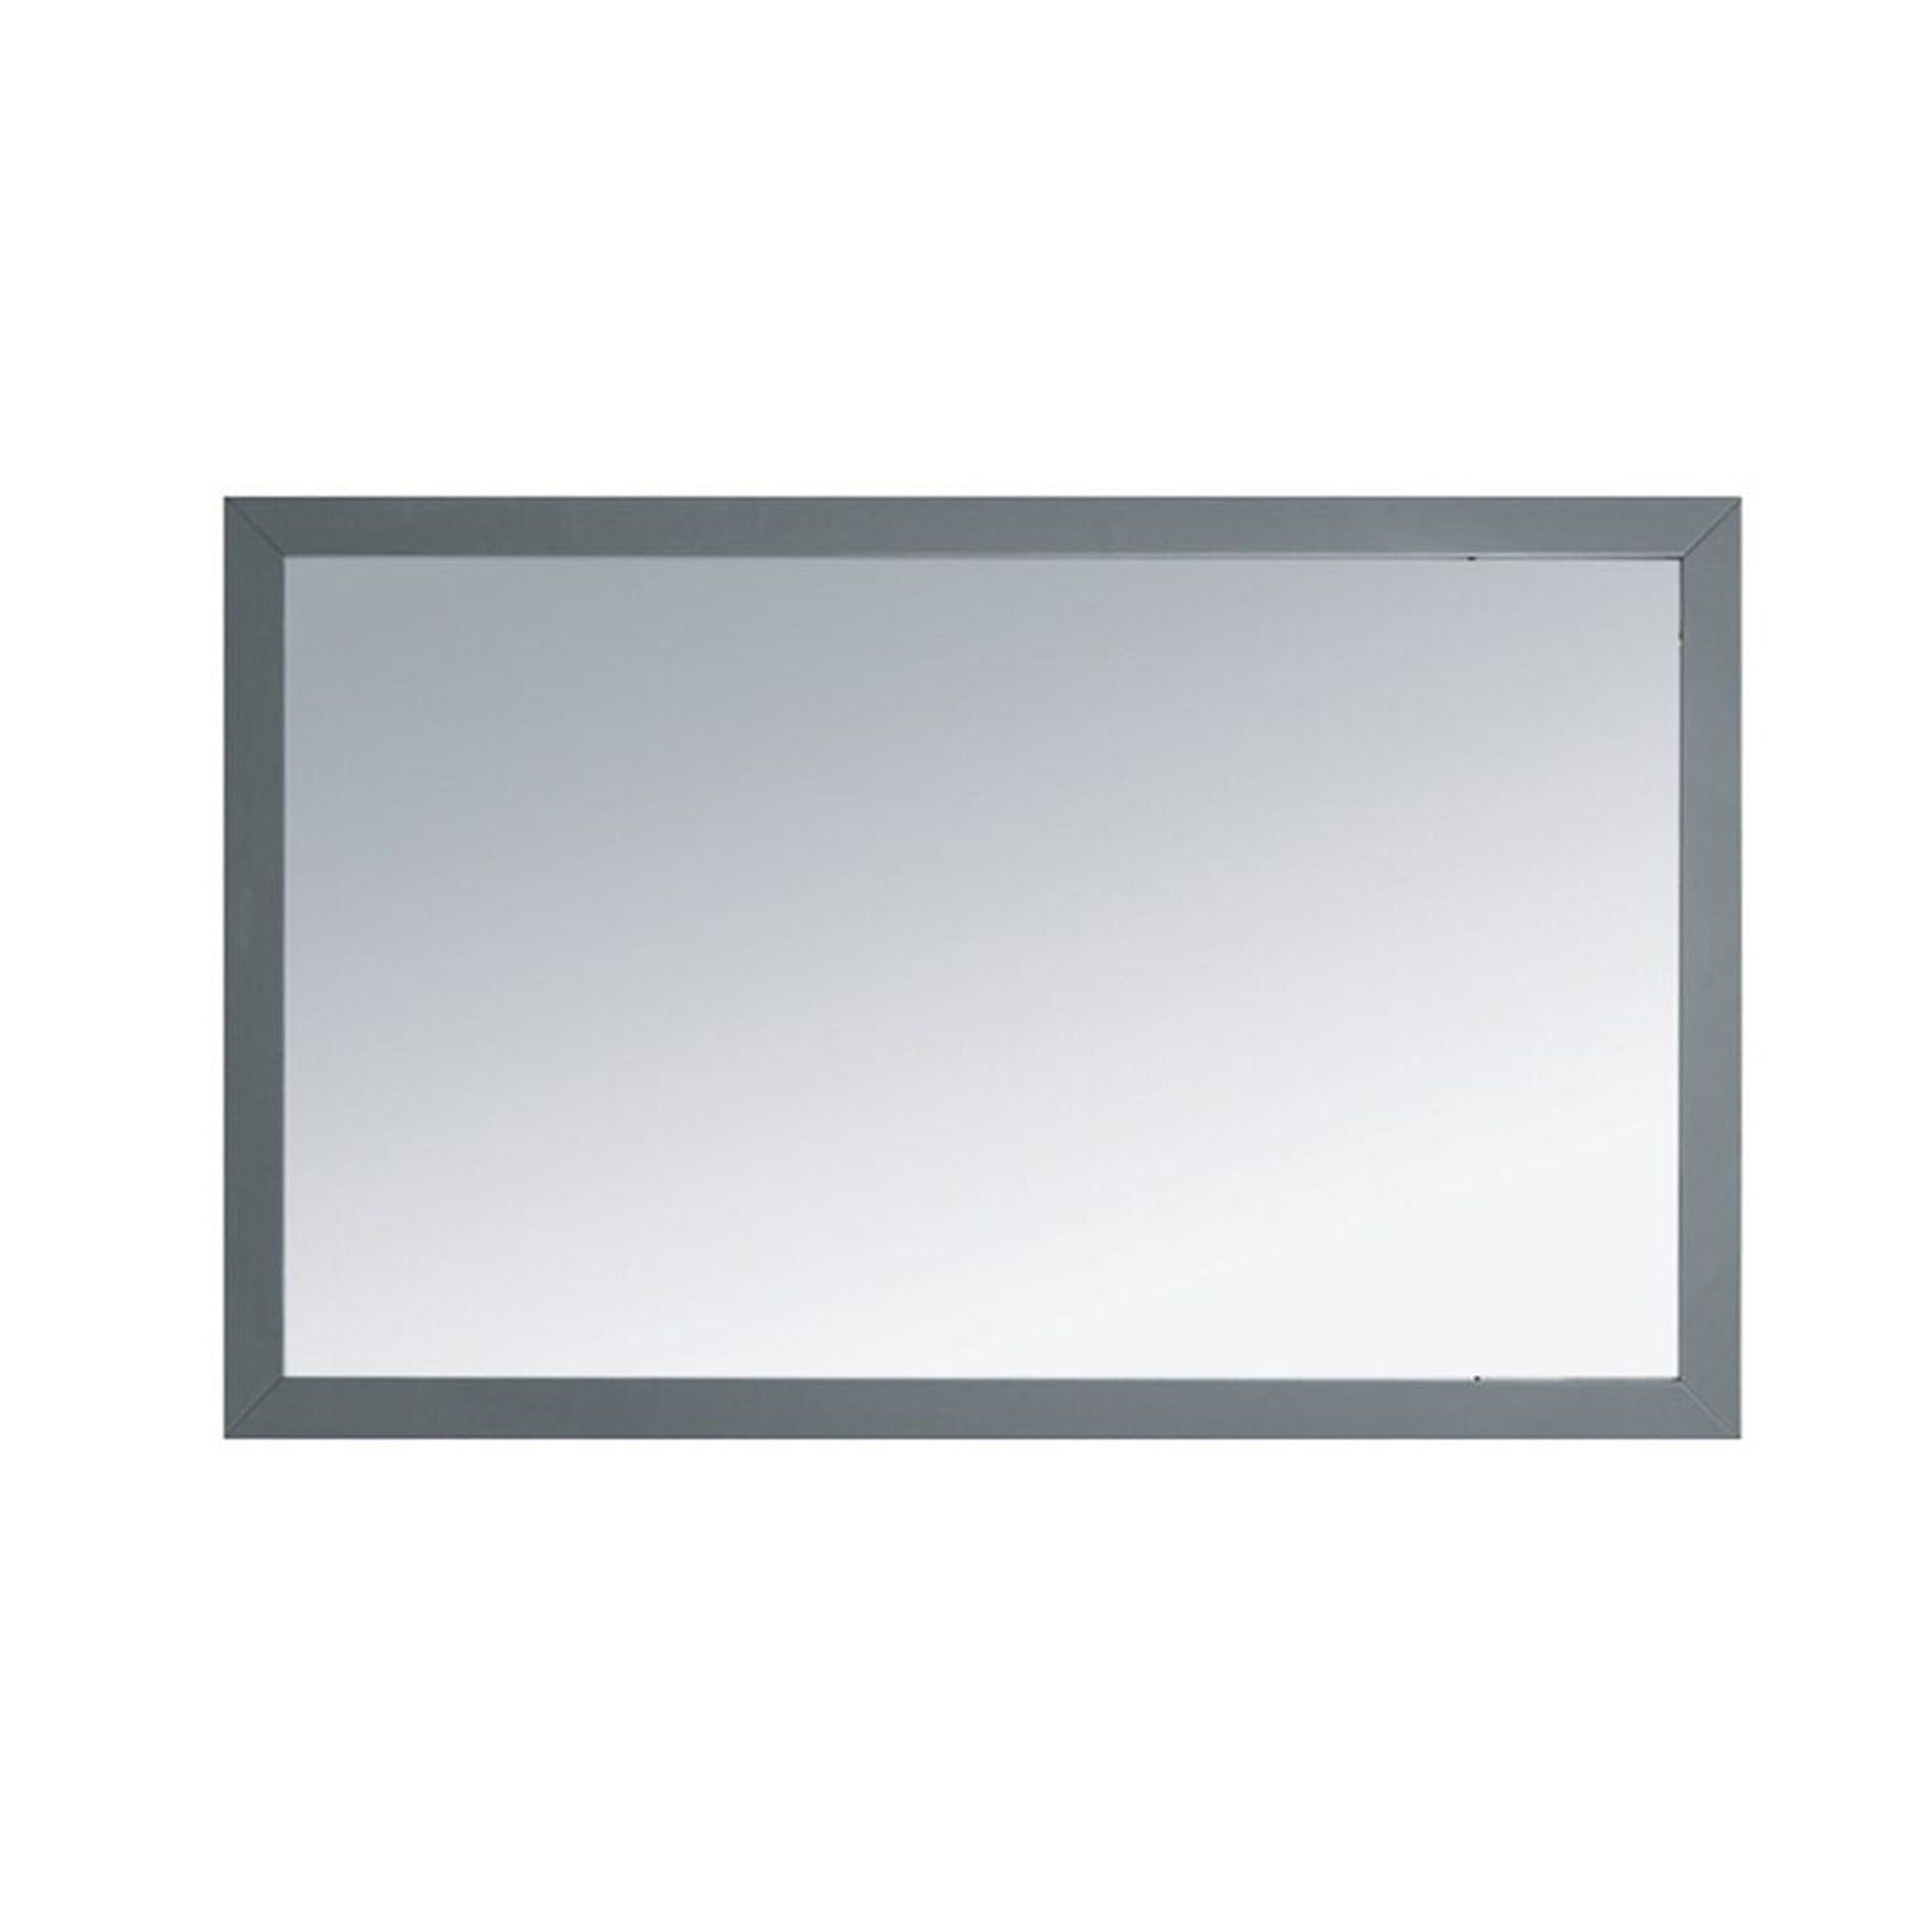 Laviva Sterling 48" Maple Gray Fully Framed Rectangular Mirror